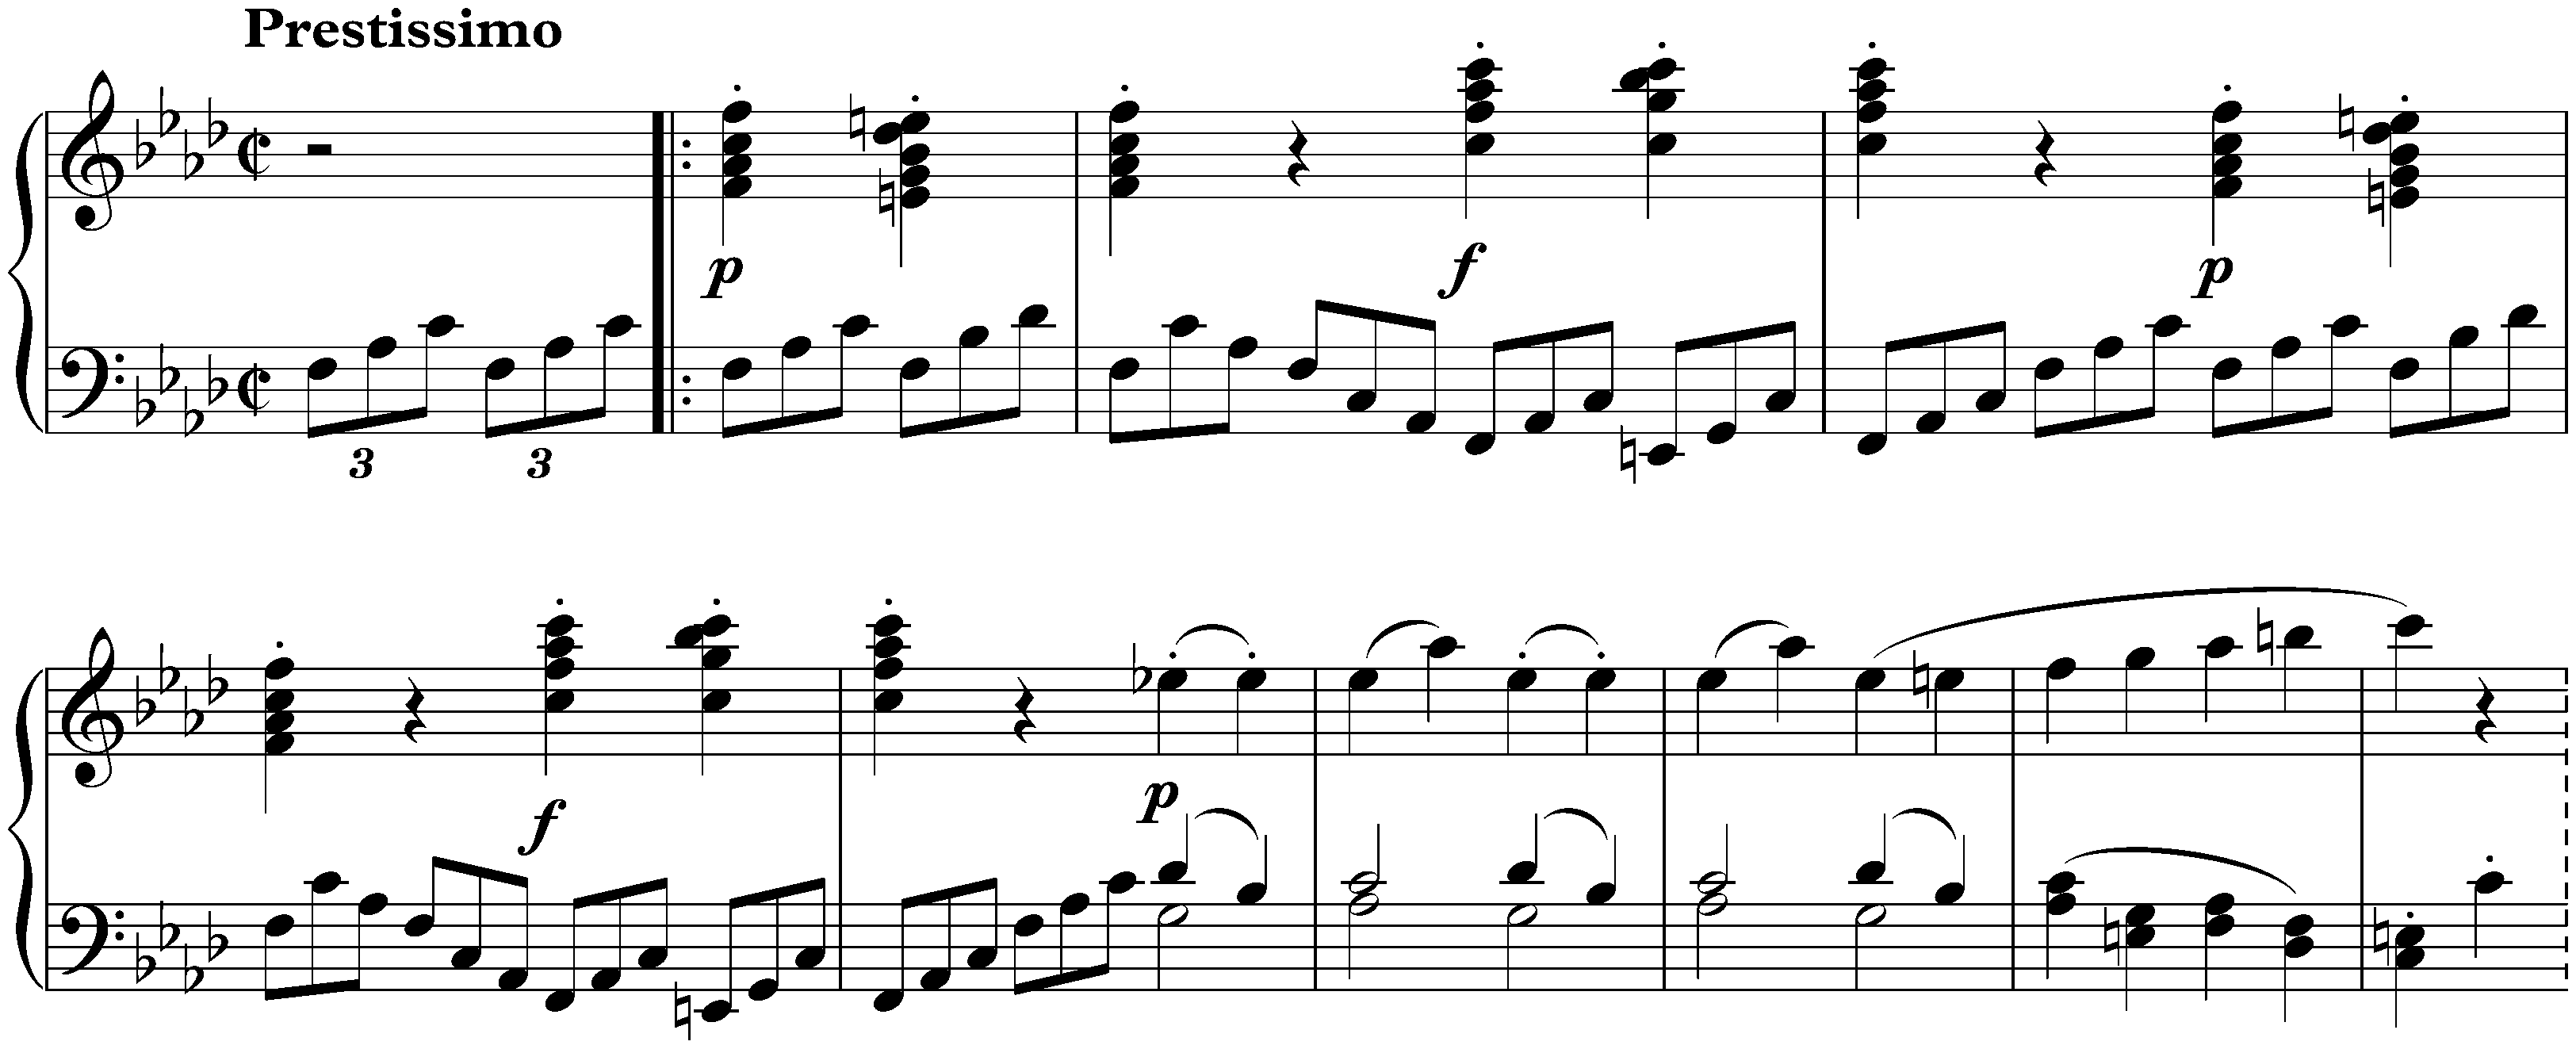 Sonata no. 1 in F minor, op. 2 no. 1; 4. Prestissimo